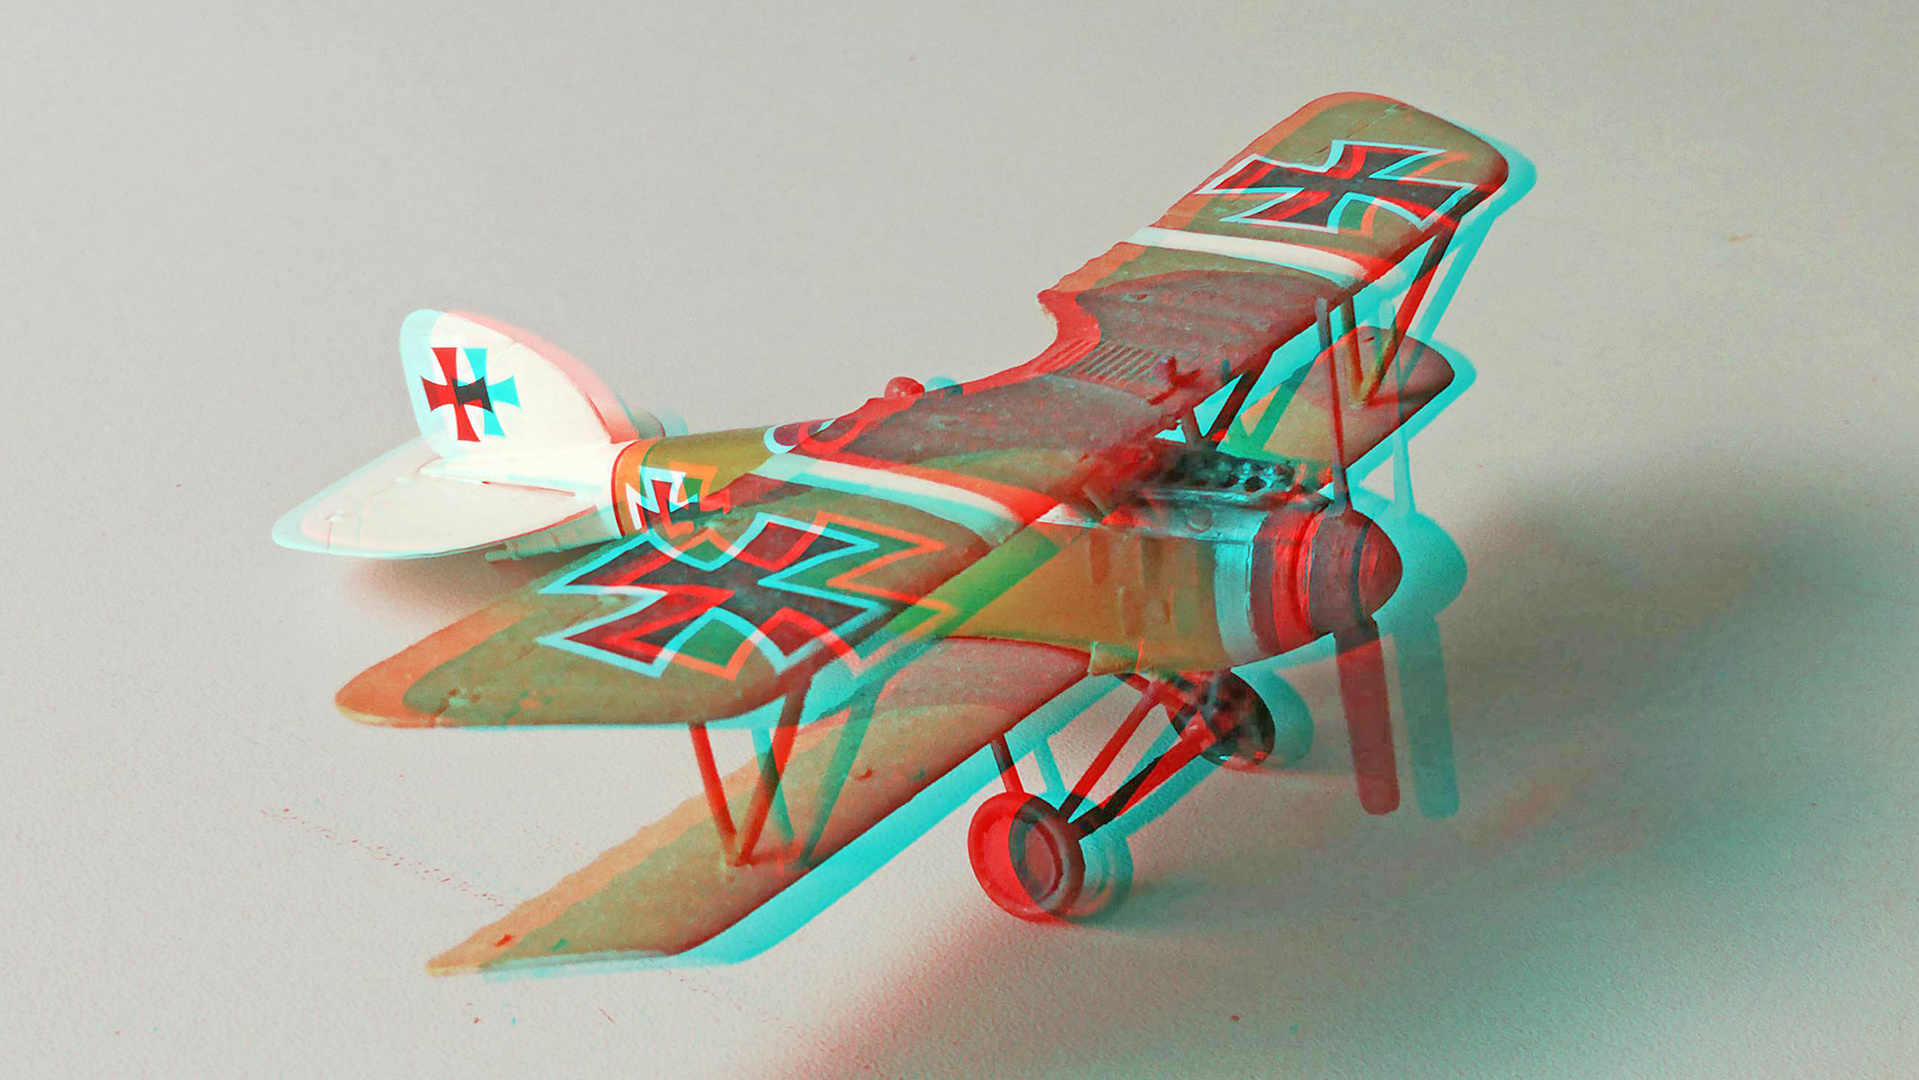 Flugzeugmodell